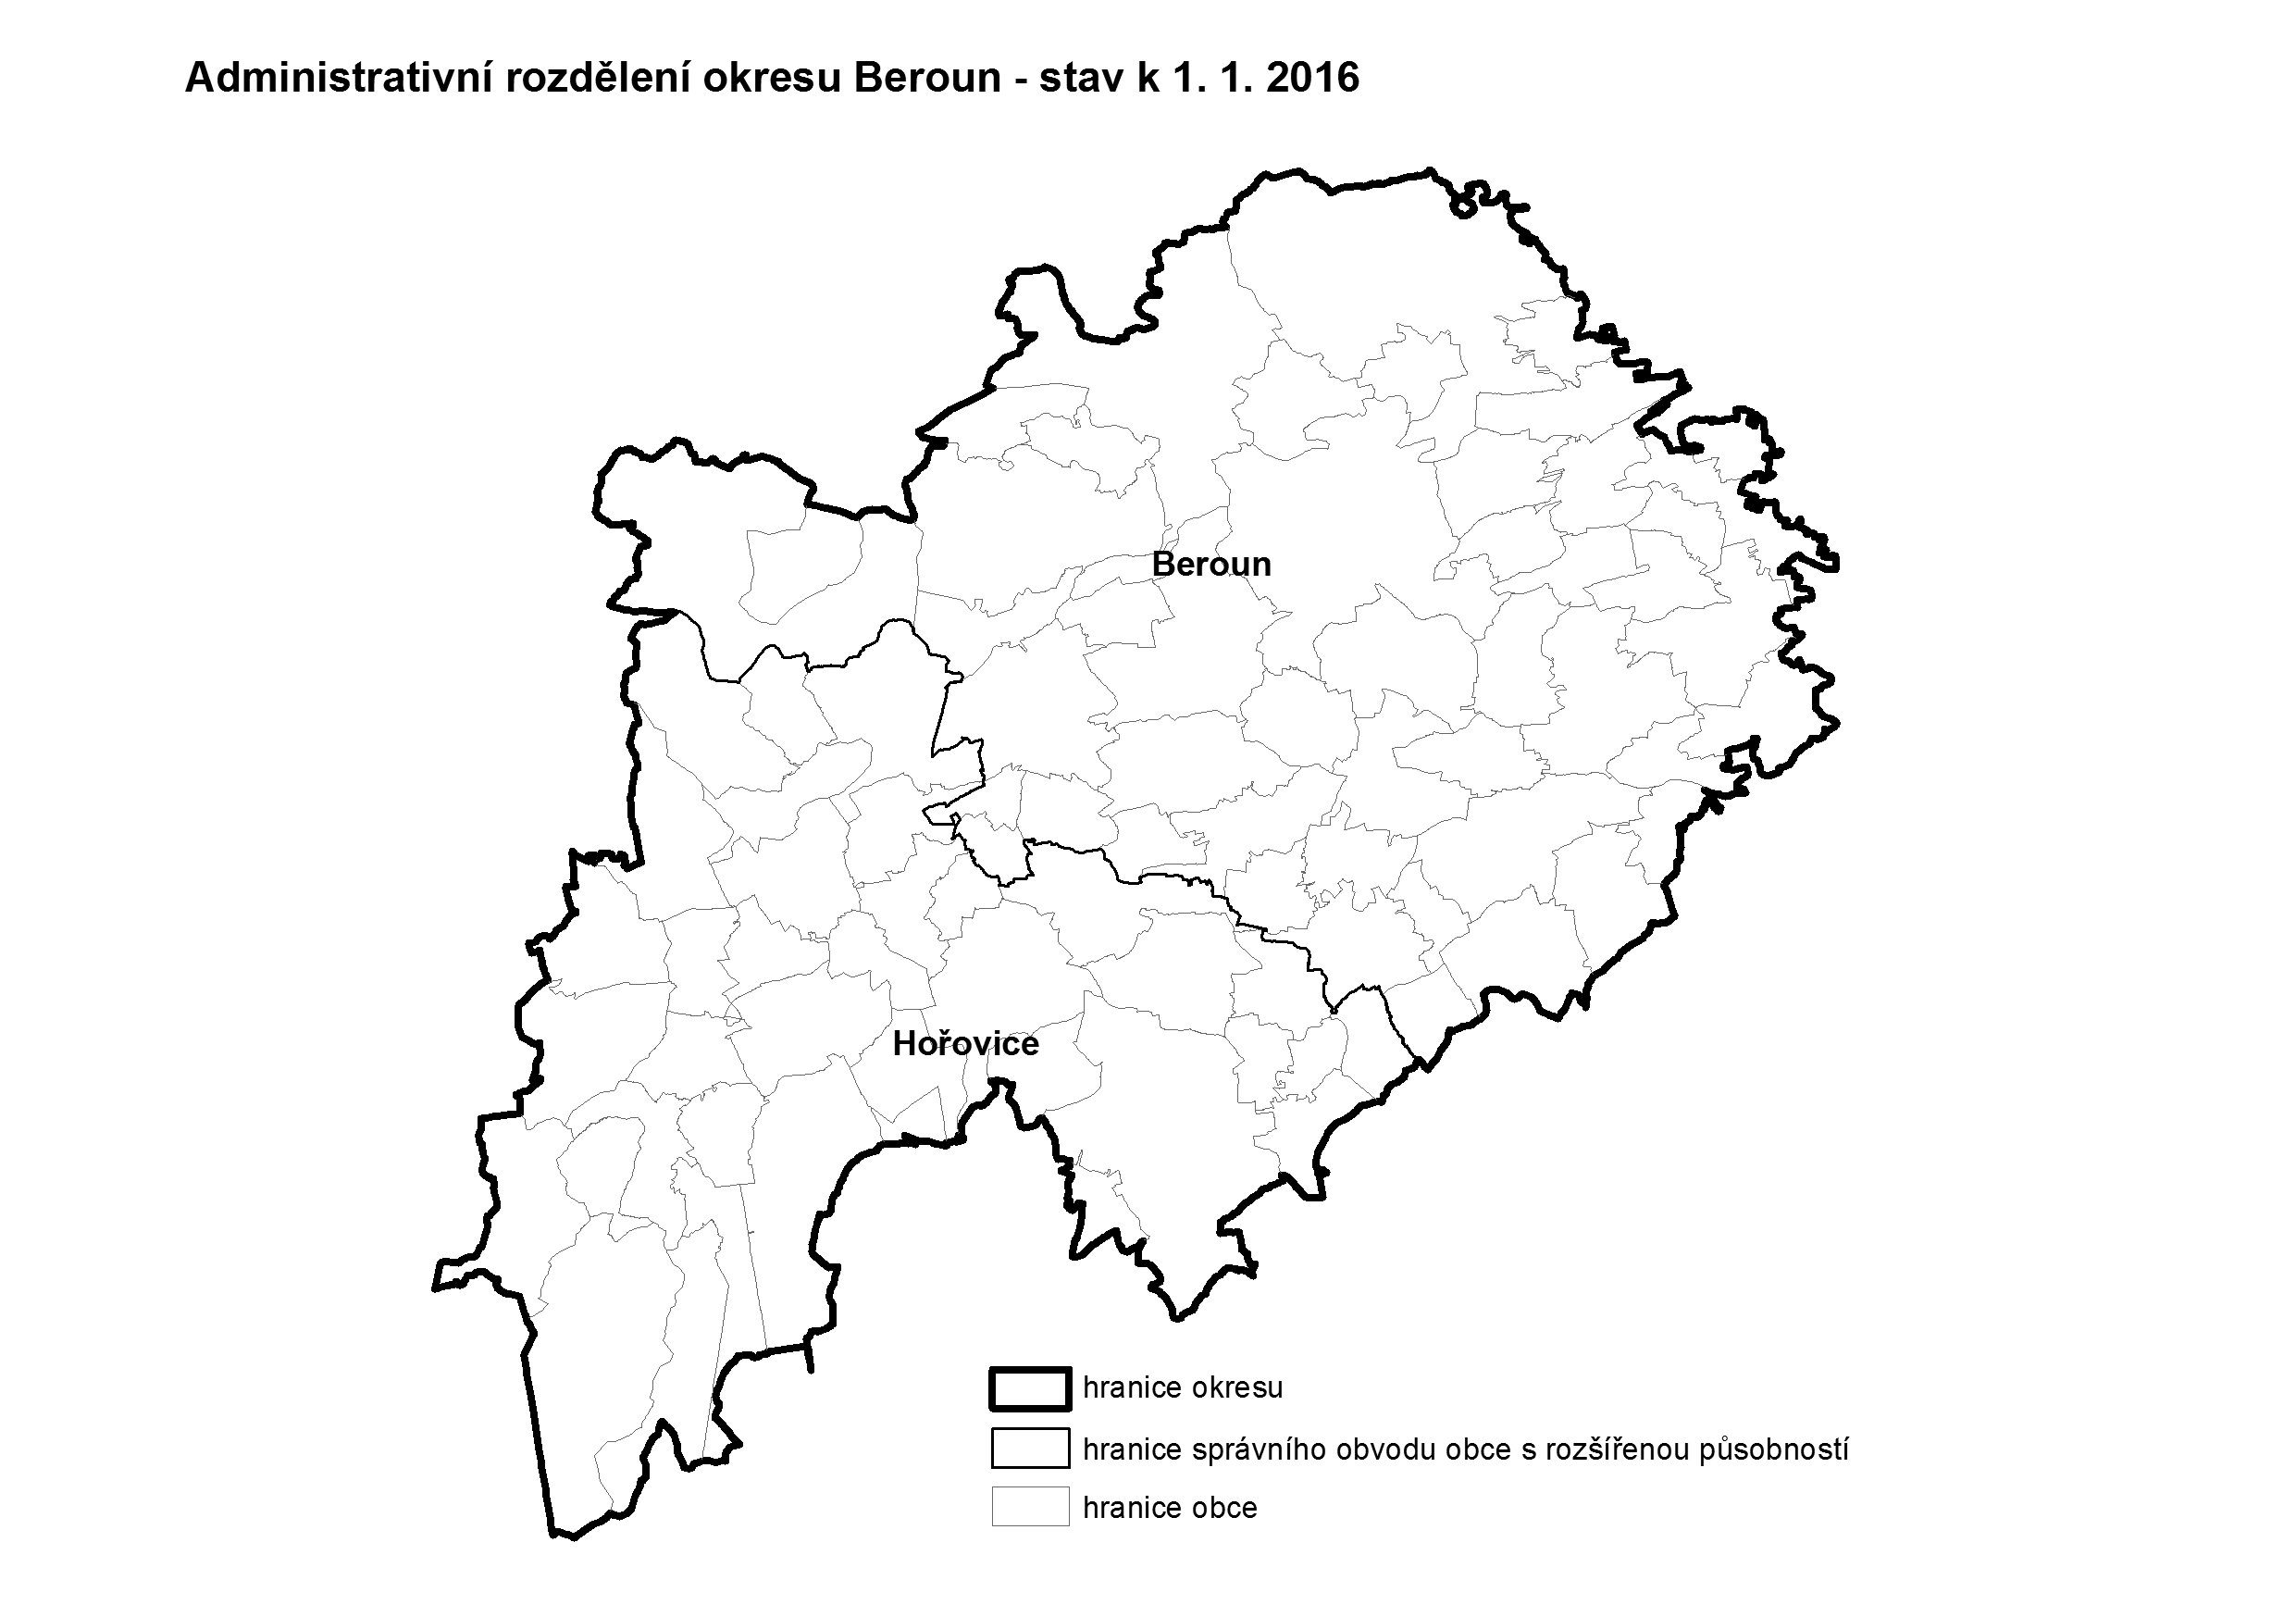 Administrativní rozdělení okresu Beroun k 1.1.2016